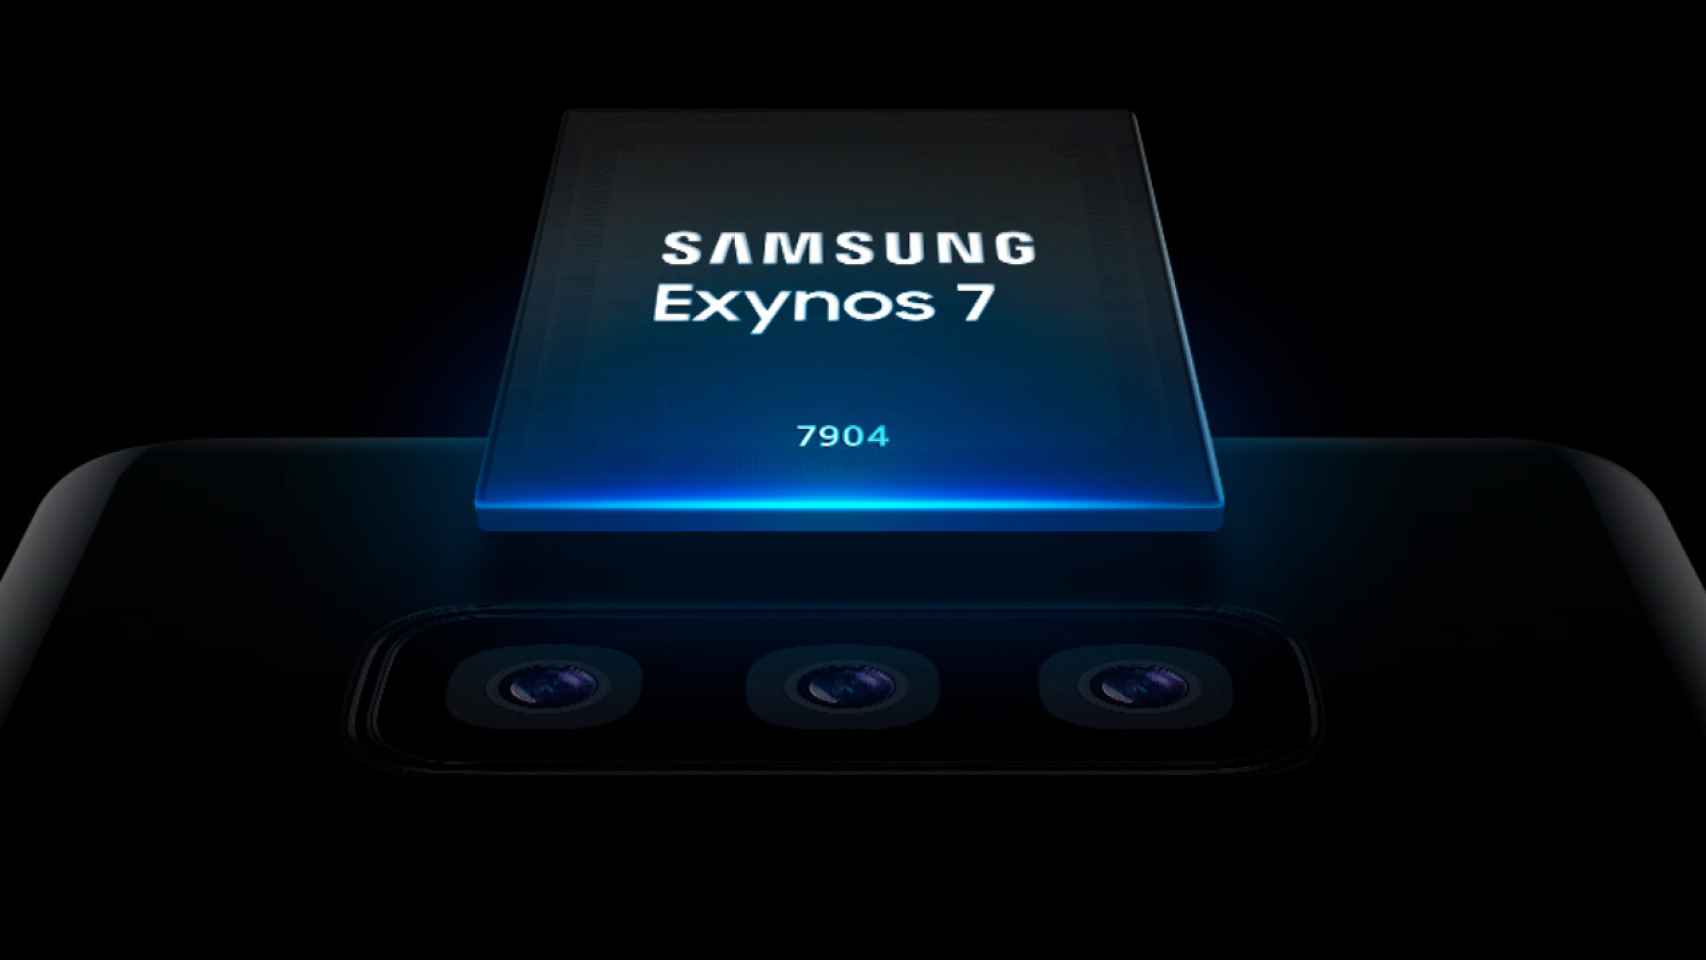 El nuevo procesador Exynos de Samsung lleva la triple cámara a la gama media